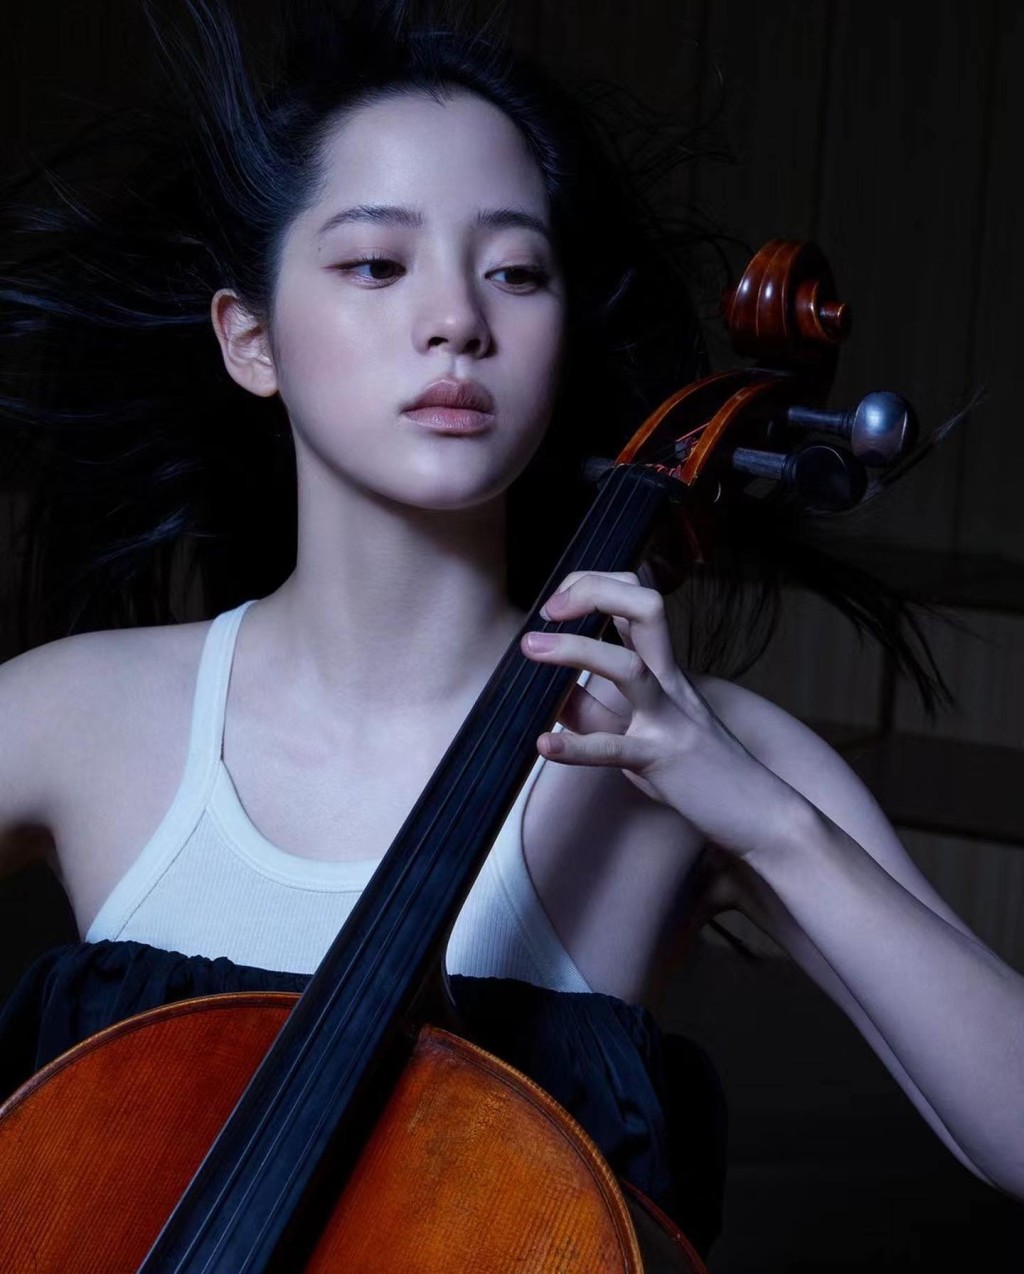 欧阳娜娜自幼学大提琴，10岁时举行第一场个人慈善音乐会，迄今已举办130场个人音乐会。